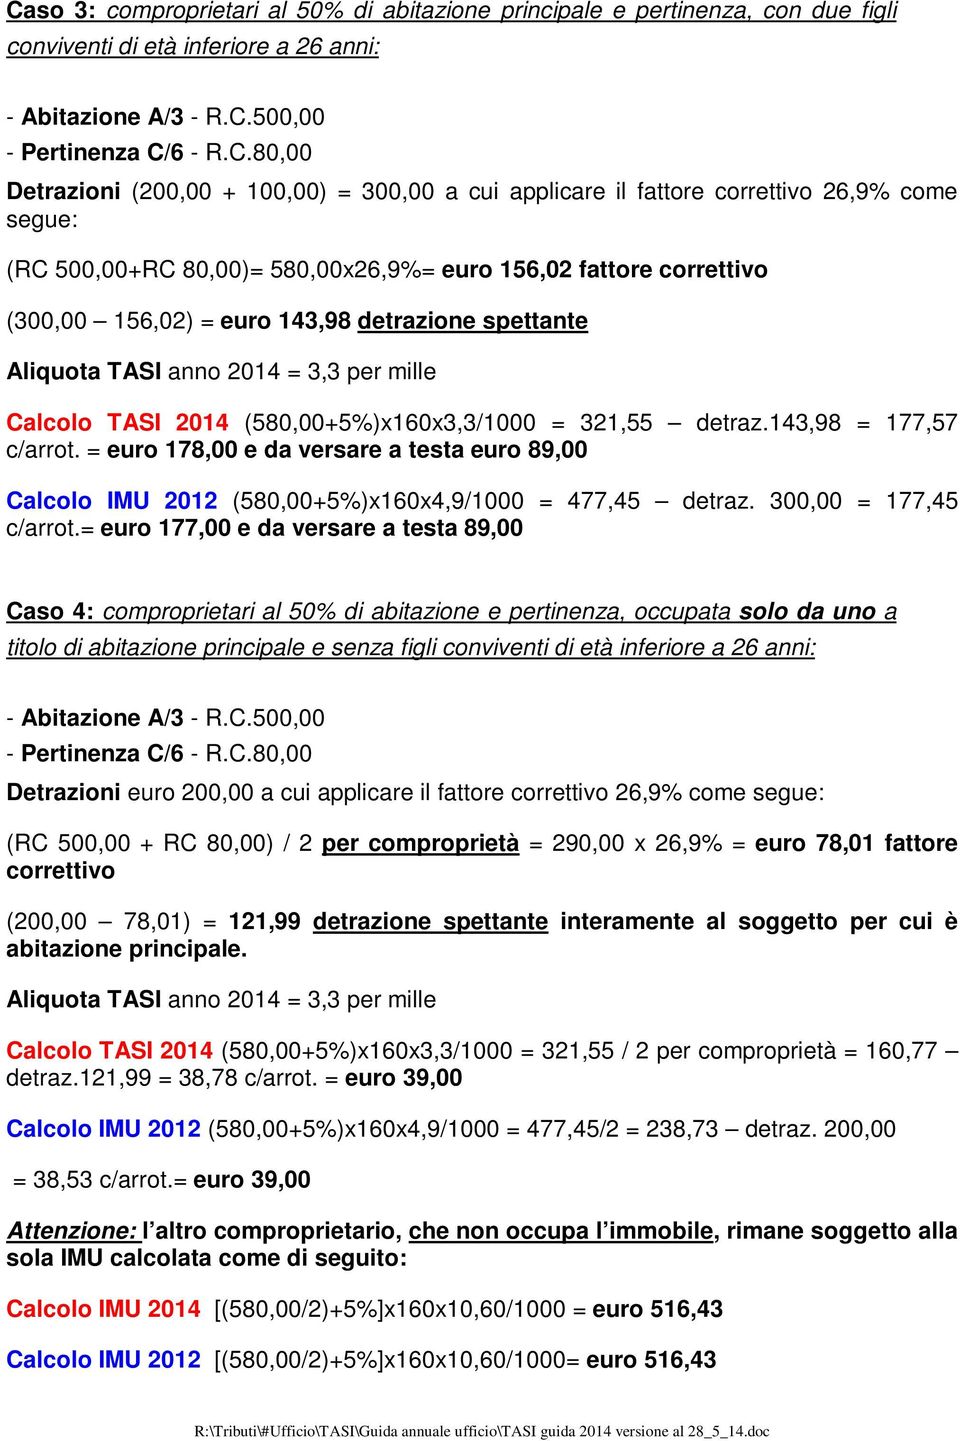 Calcolo TASI 2014 (580,00+5%)x160x3,3/1000 = 321,55 detraz.143,98 = 177,57 c/arrot. = euro 178,00 e da versare a testa euro 89,00 Calcolo IMU 2012 (580,00+5%)x160x4,9/1000 = 477,45 detraz.